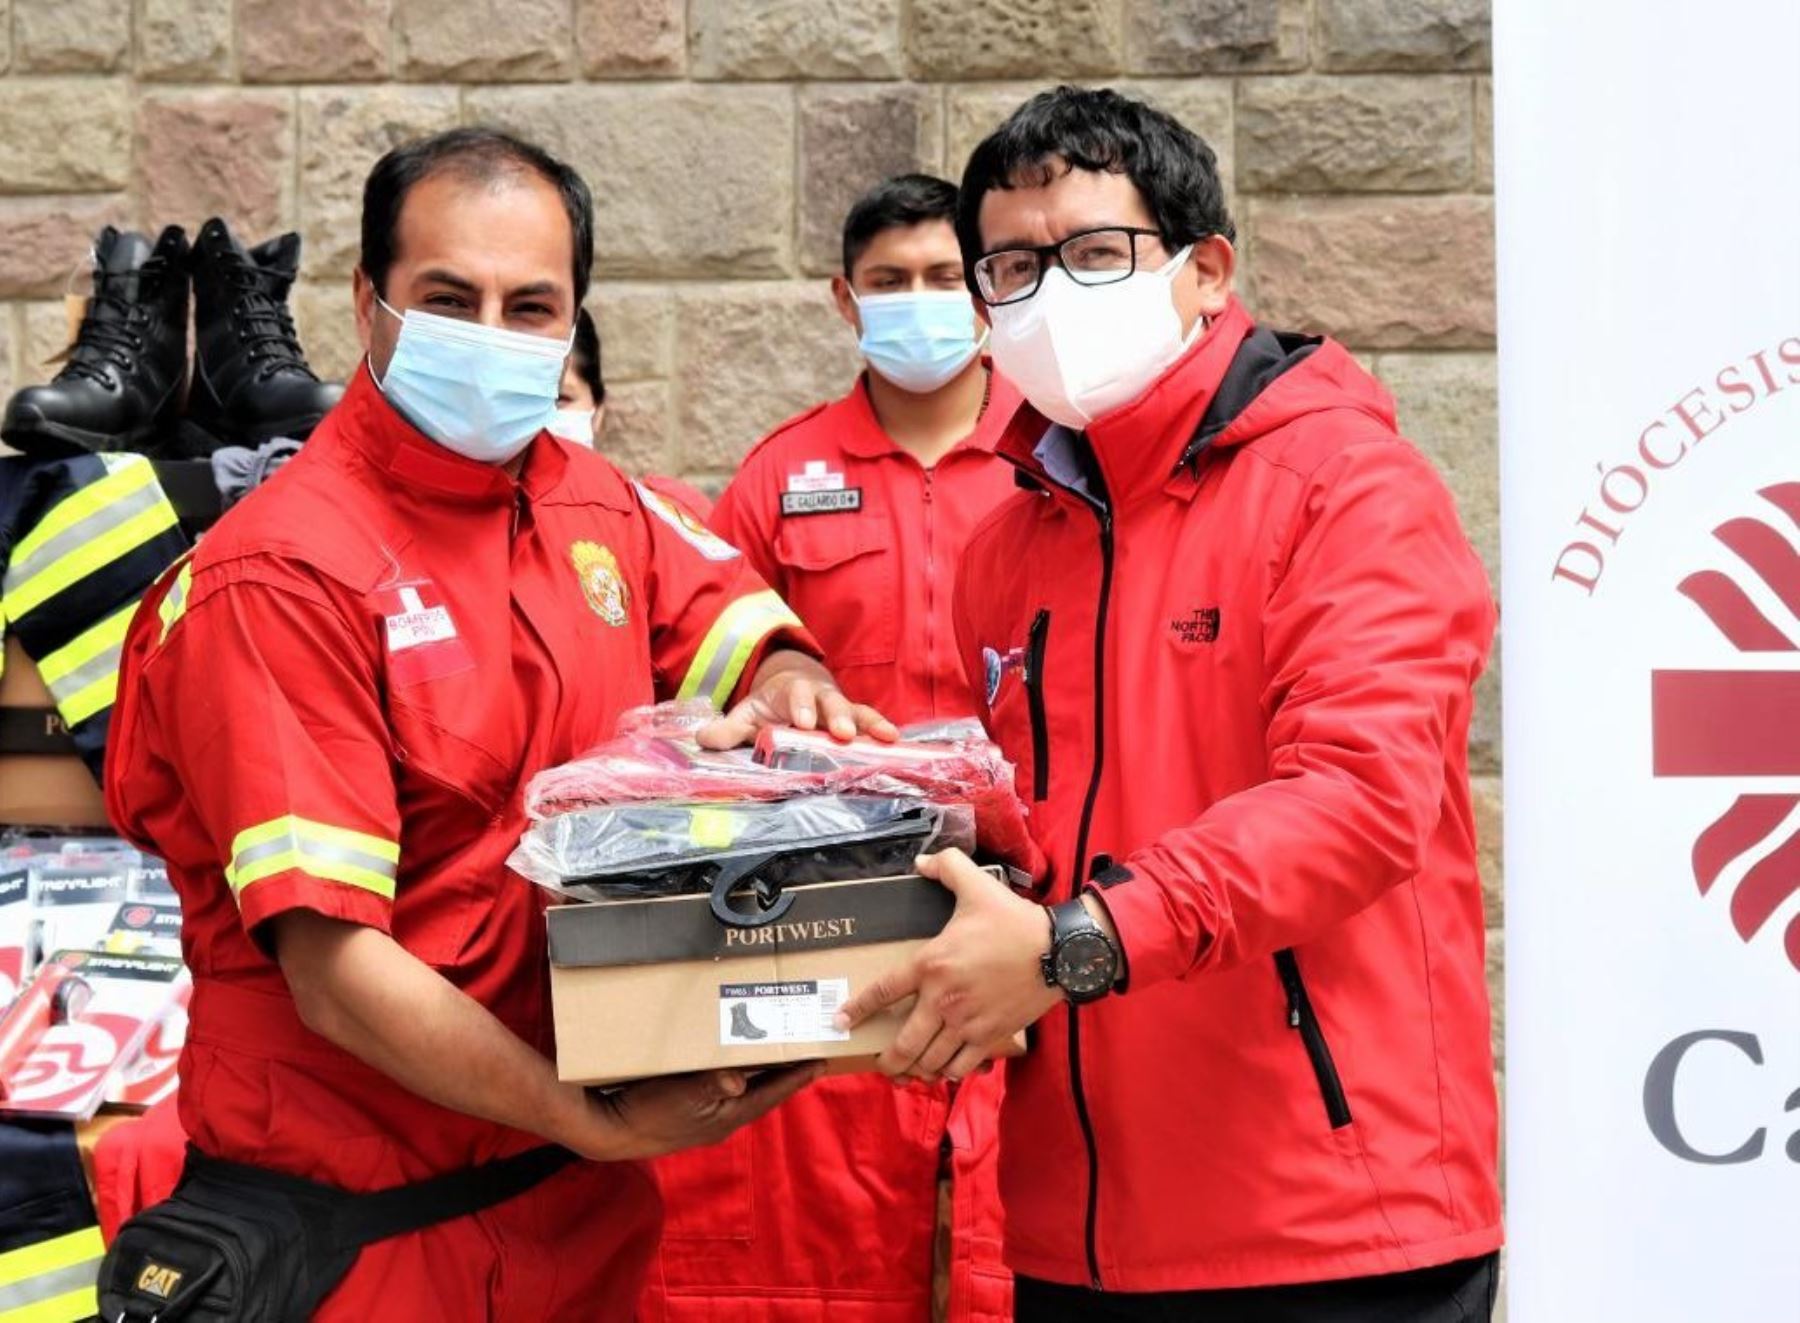 Cajamarca organiza una colecta para ayudar a los bomberos y espera recaudar S/ 500,000 durante campaña que se realizará en octubre y noviembre. ANDINA/Difusión